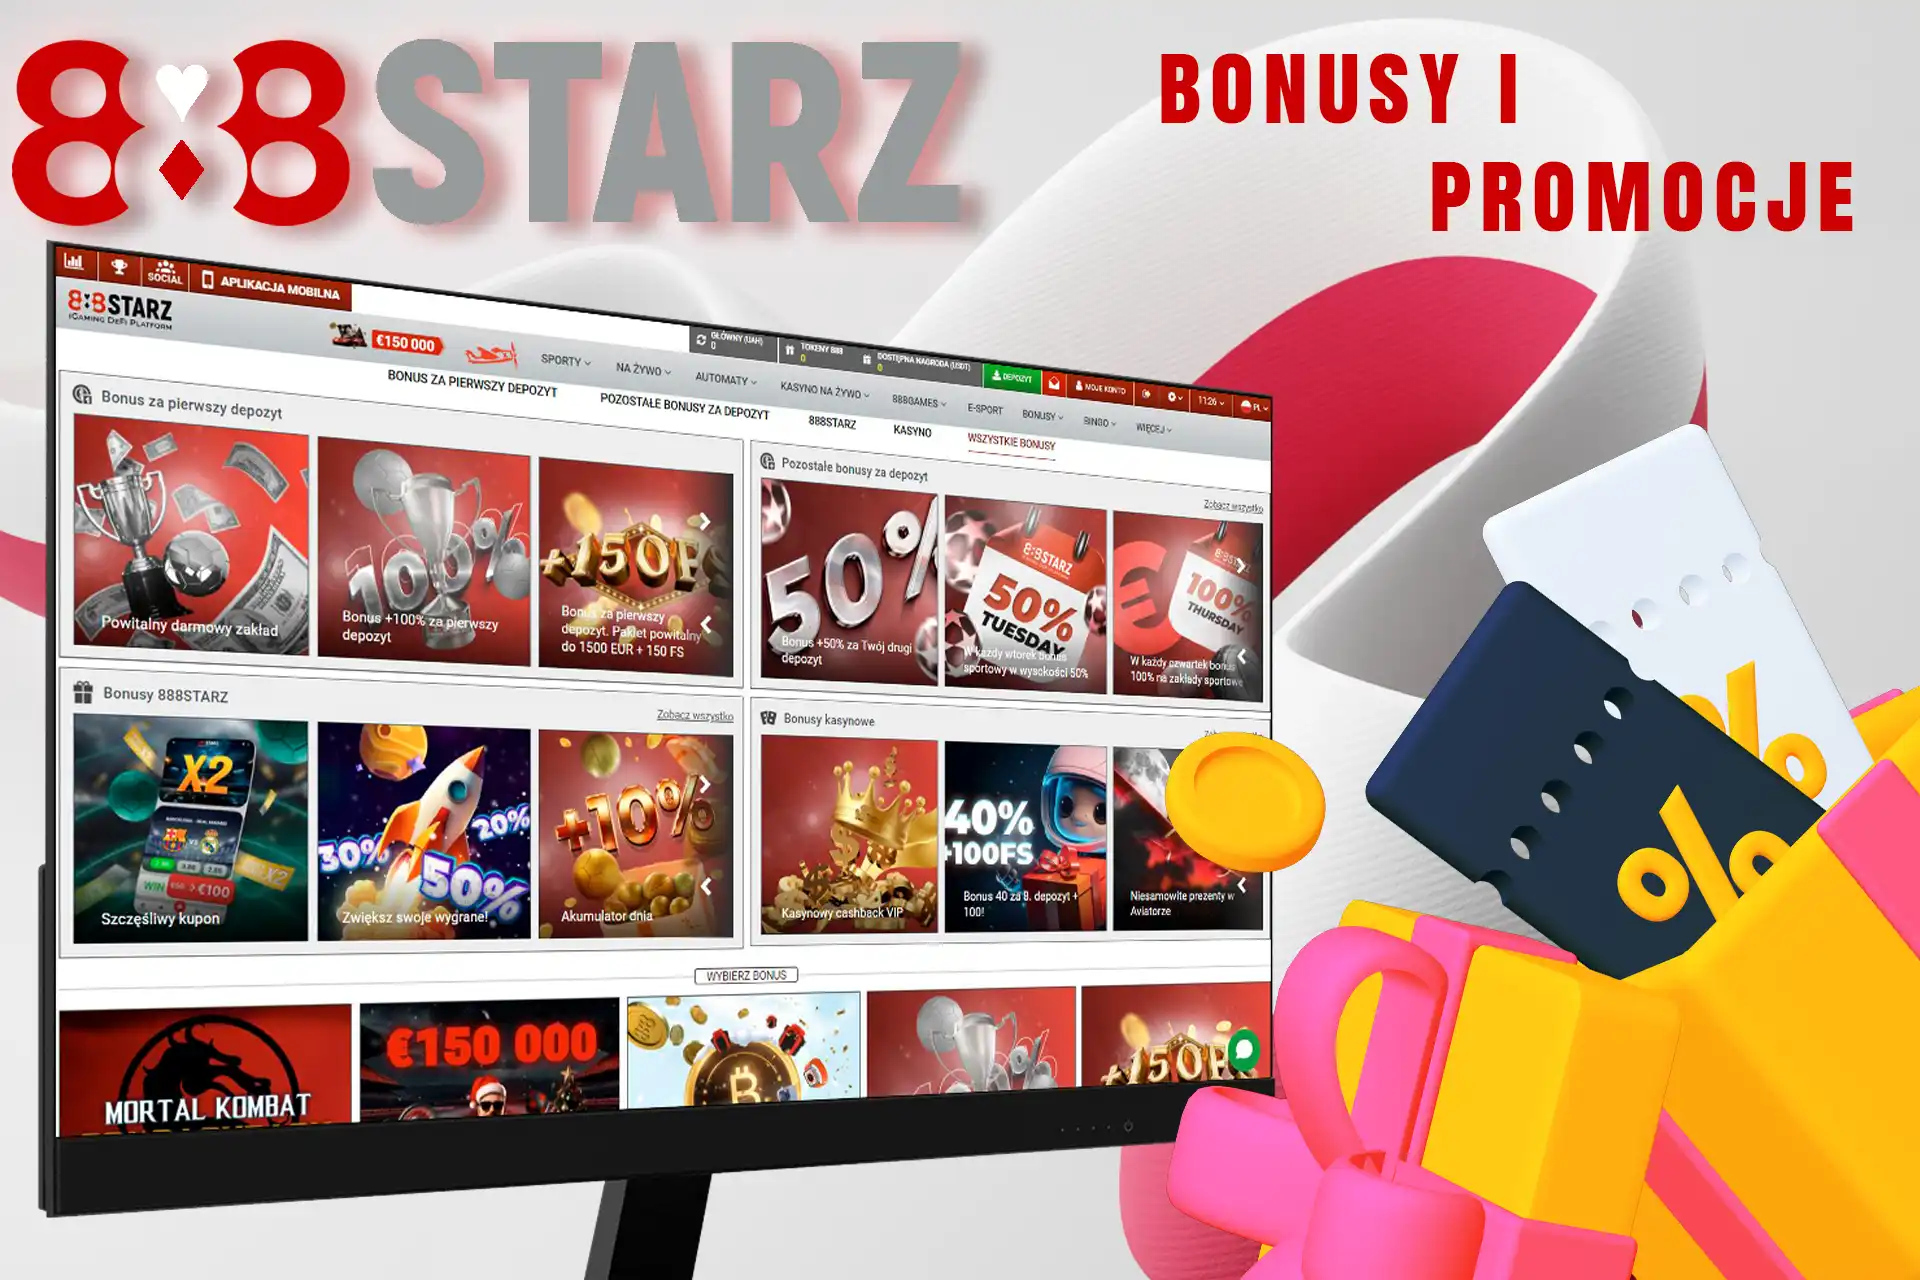 Program bonusowy 888Starz